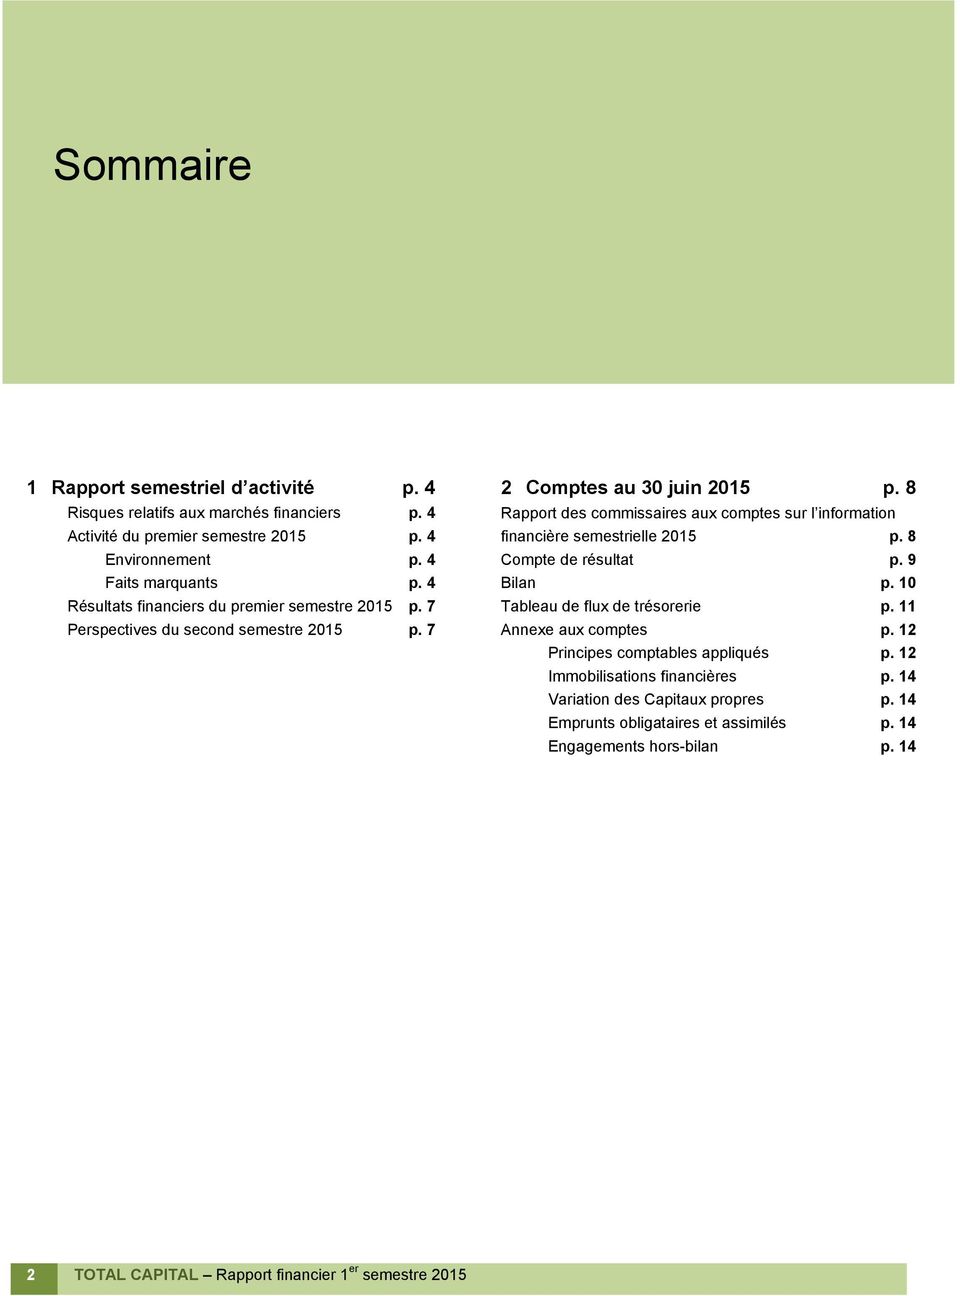 8 Rapport des commissaires aux comptes sur l information financière semestrielle 2015 p. 8 Compte de résultat p. 9 Bilan p. 10 Tableau de flux de trésorerie p. 11 Annexe aux comptes p.